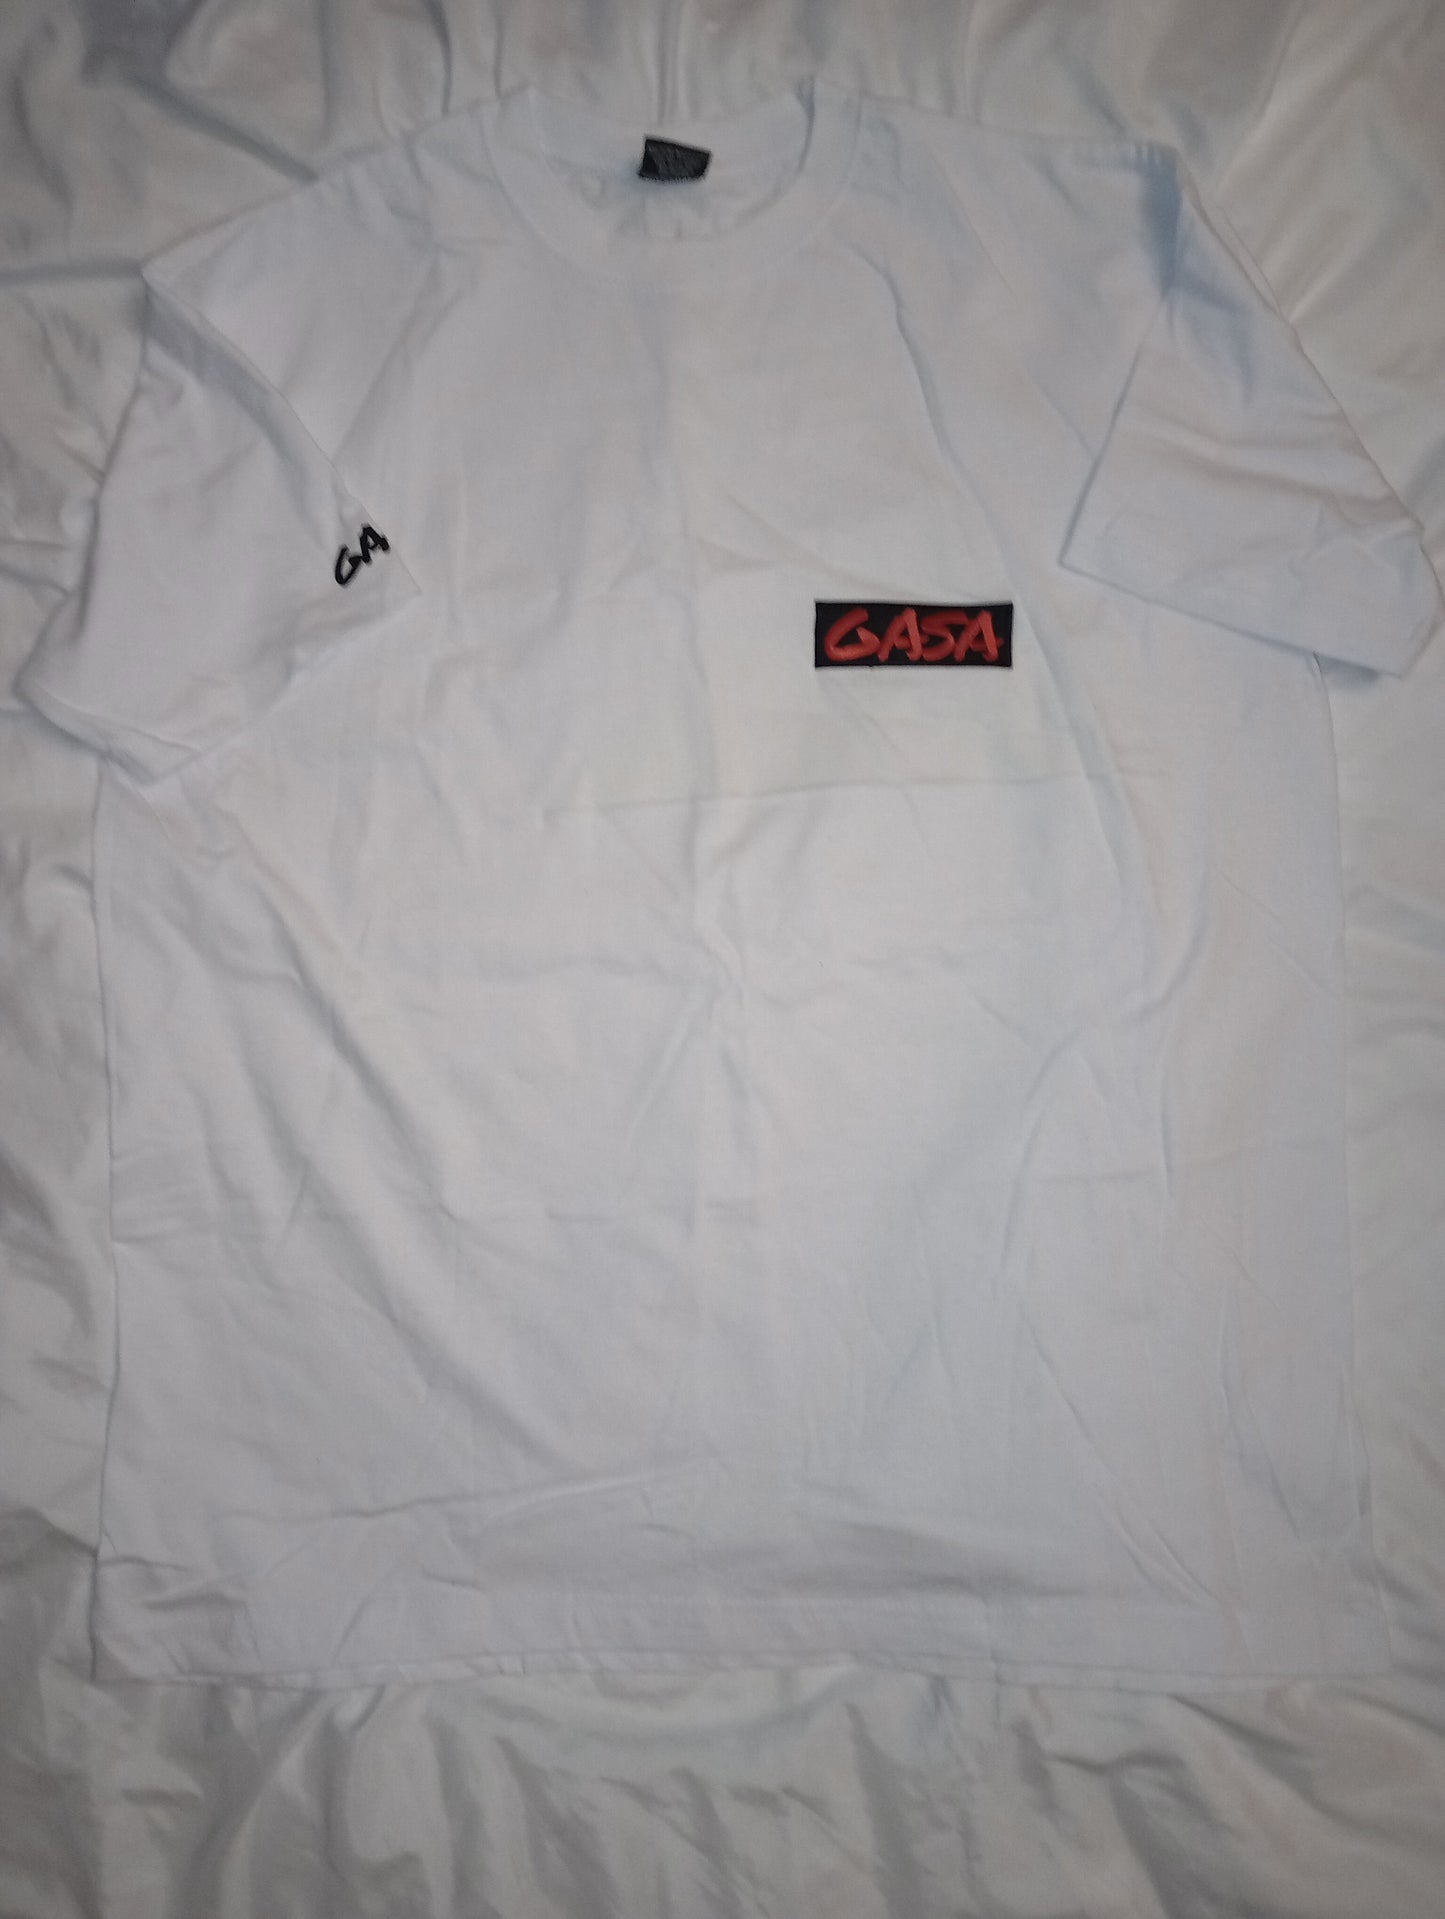 GASA 2024 short sleeve patch T-shirt